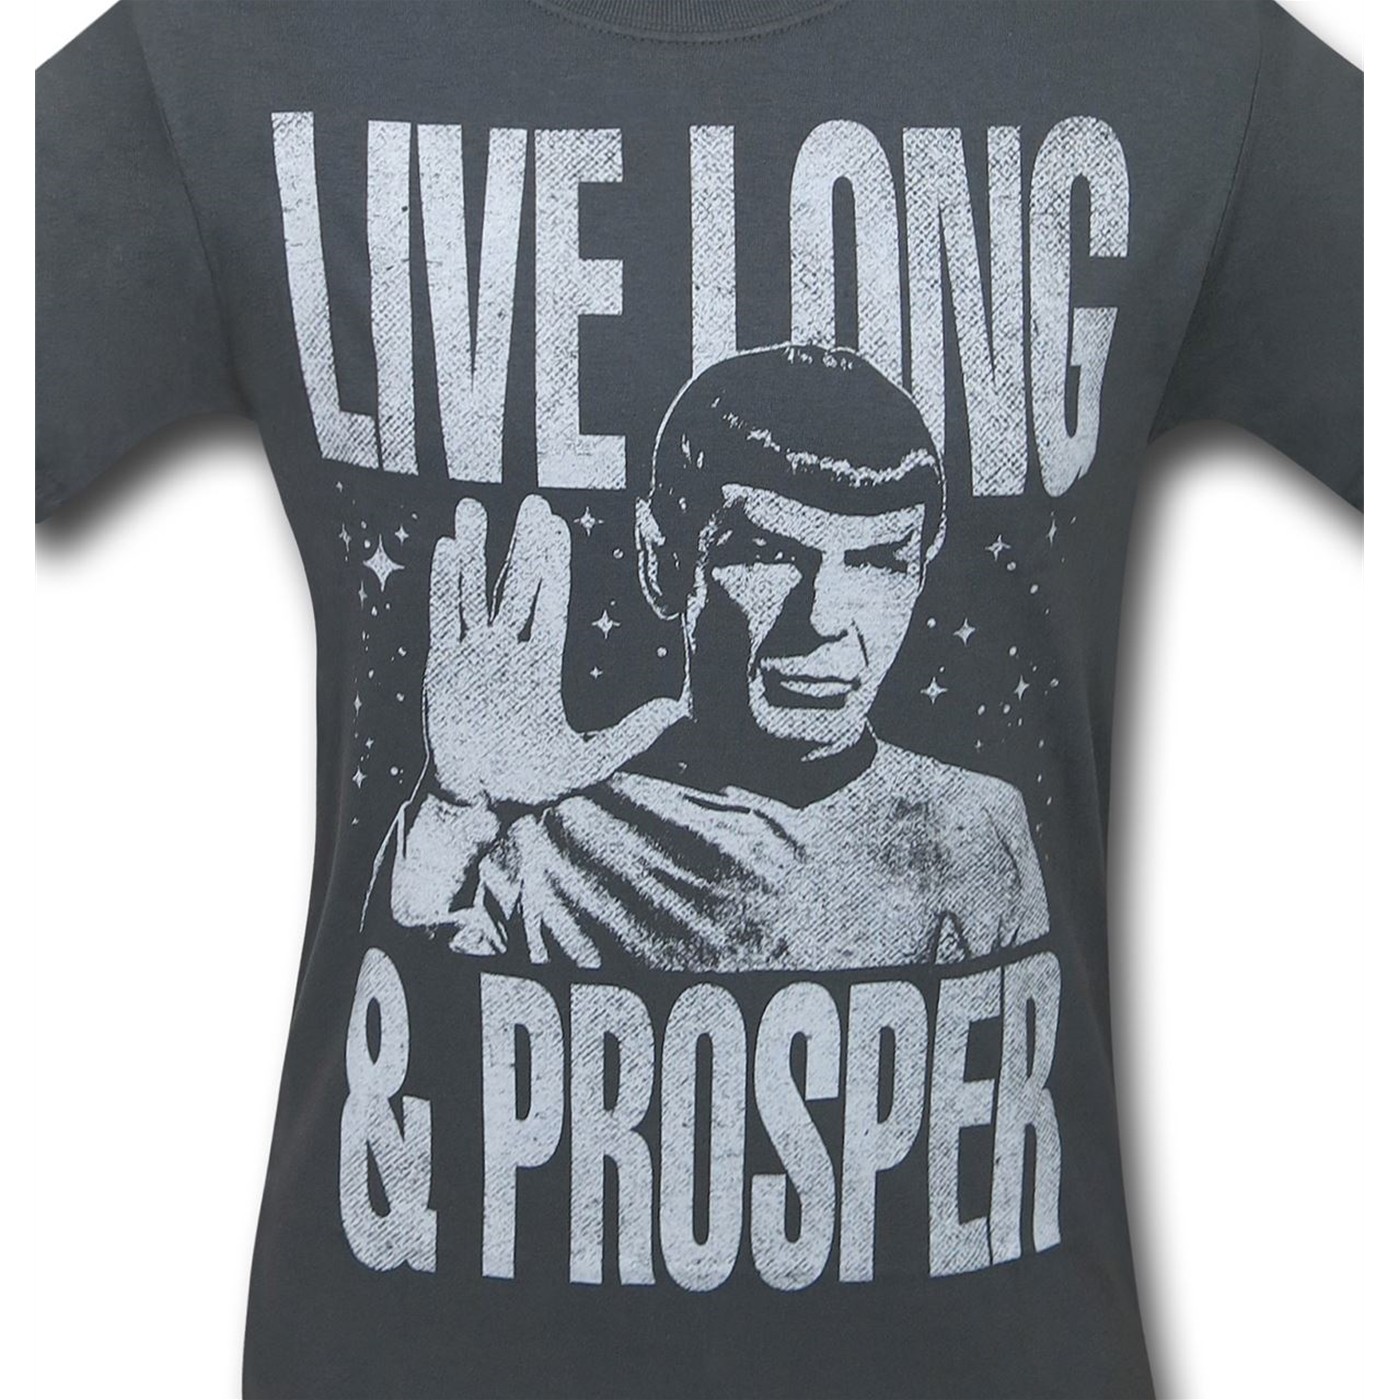 Star Trek Live Long & Prosper Grey Men's T-Shirt